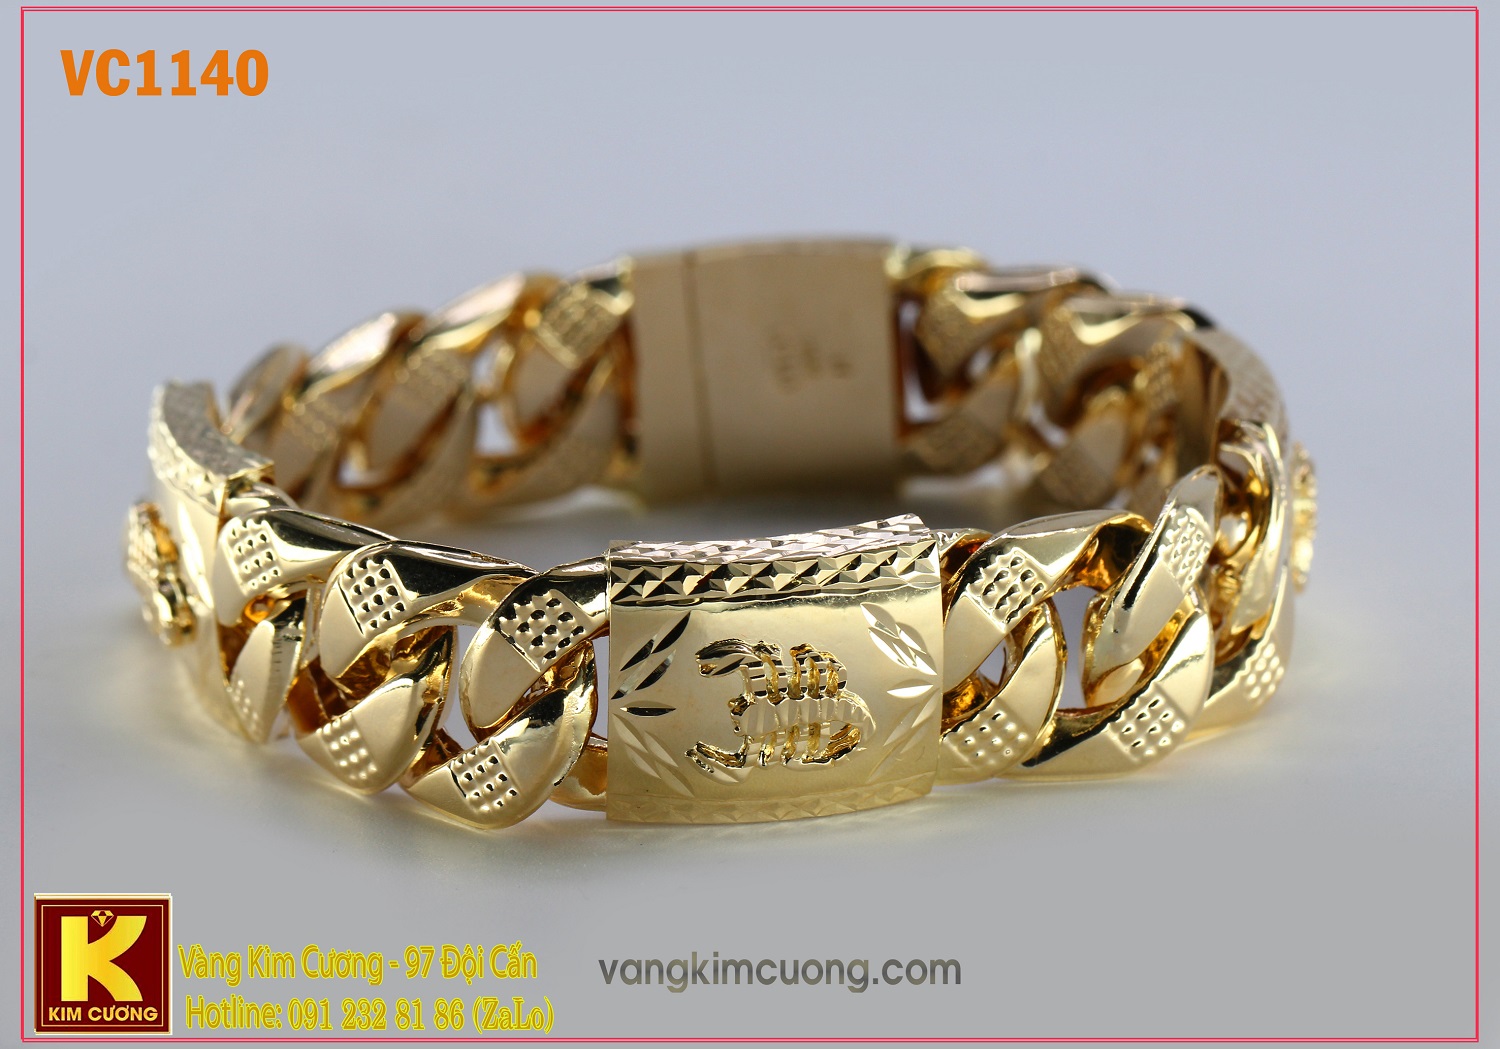 Lắc tay vàng nam VC1140 - Hãy để RIO Jewelry giúp bạn tìm kiếm những chiếc lắc tay vàng nam sang trọng nhất. Với mẫu mã đa dạng, từ những chiếc đơn giản đến những chiếc đầy đá quý, các bộ sưu tập trang sức của chúng tôi sẽ mang đến cho bạn sự lịch lãm và phong cách. Hãy khám phá ngay bộ sưu tập VC1140 của chúng tôi để tìm kiếm món quà tuyệt vời nhất dành cho phái mạnh.